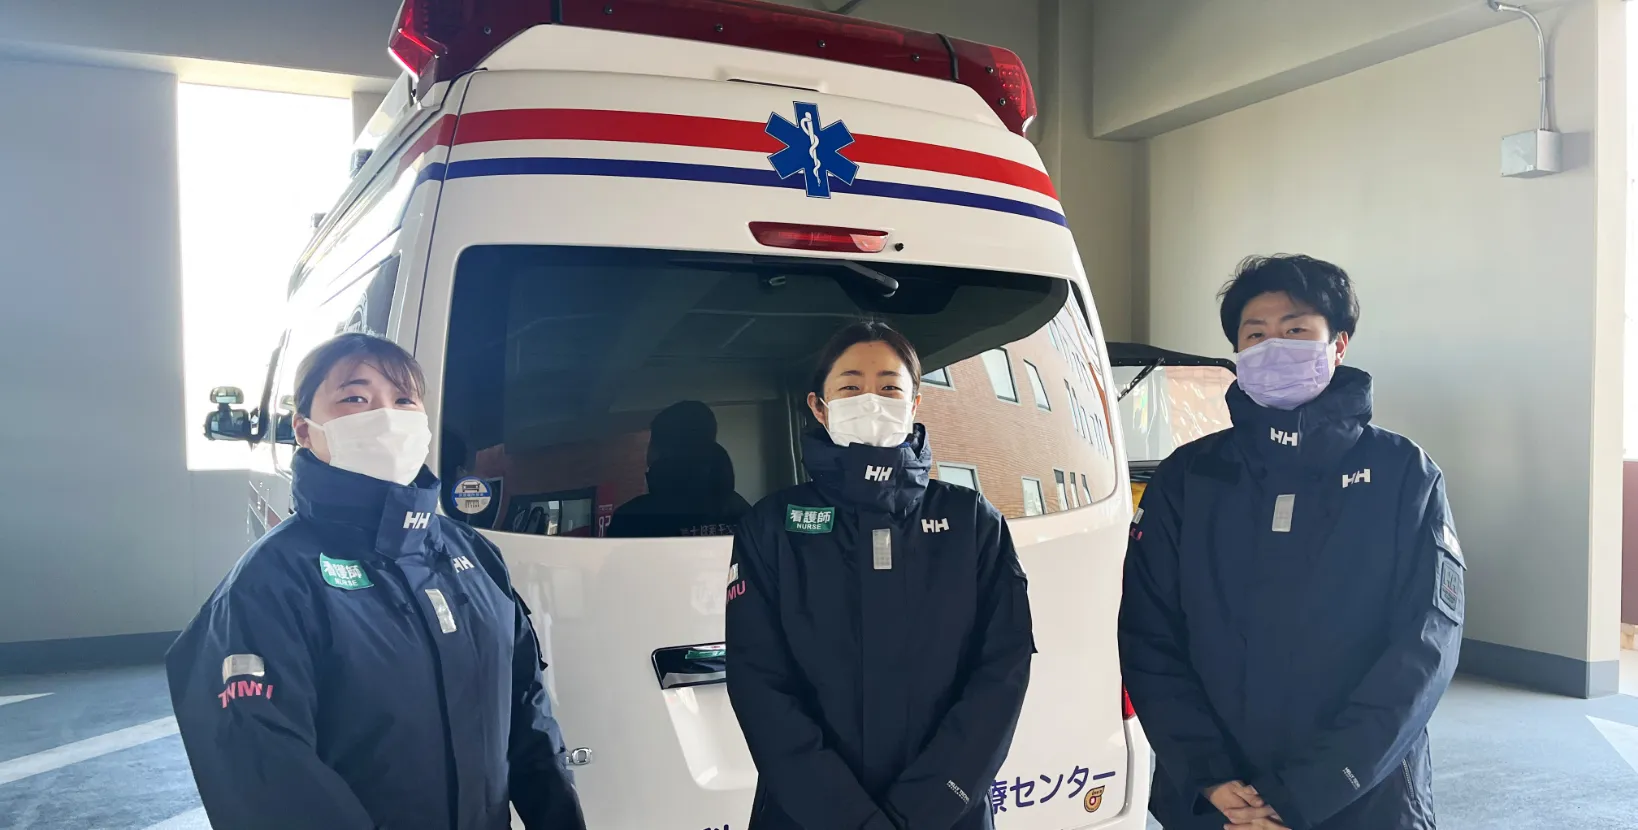 画像:救急看護の看護師が救急車の前に立っている